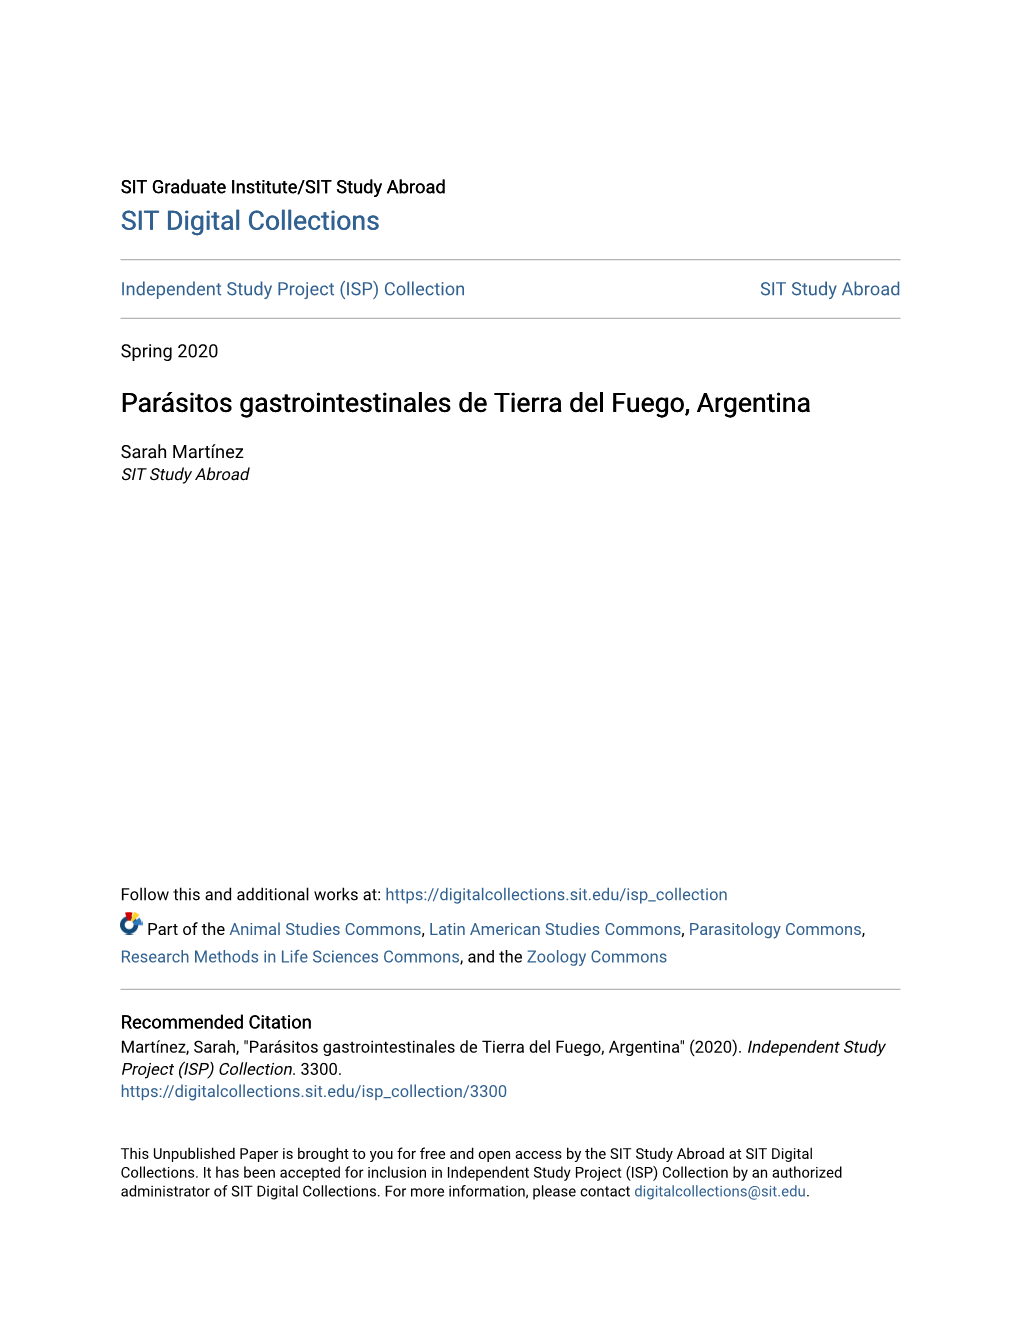 Parásitos Gastrointestinales De Tierra Del Fuego, Argentina